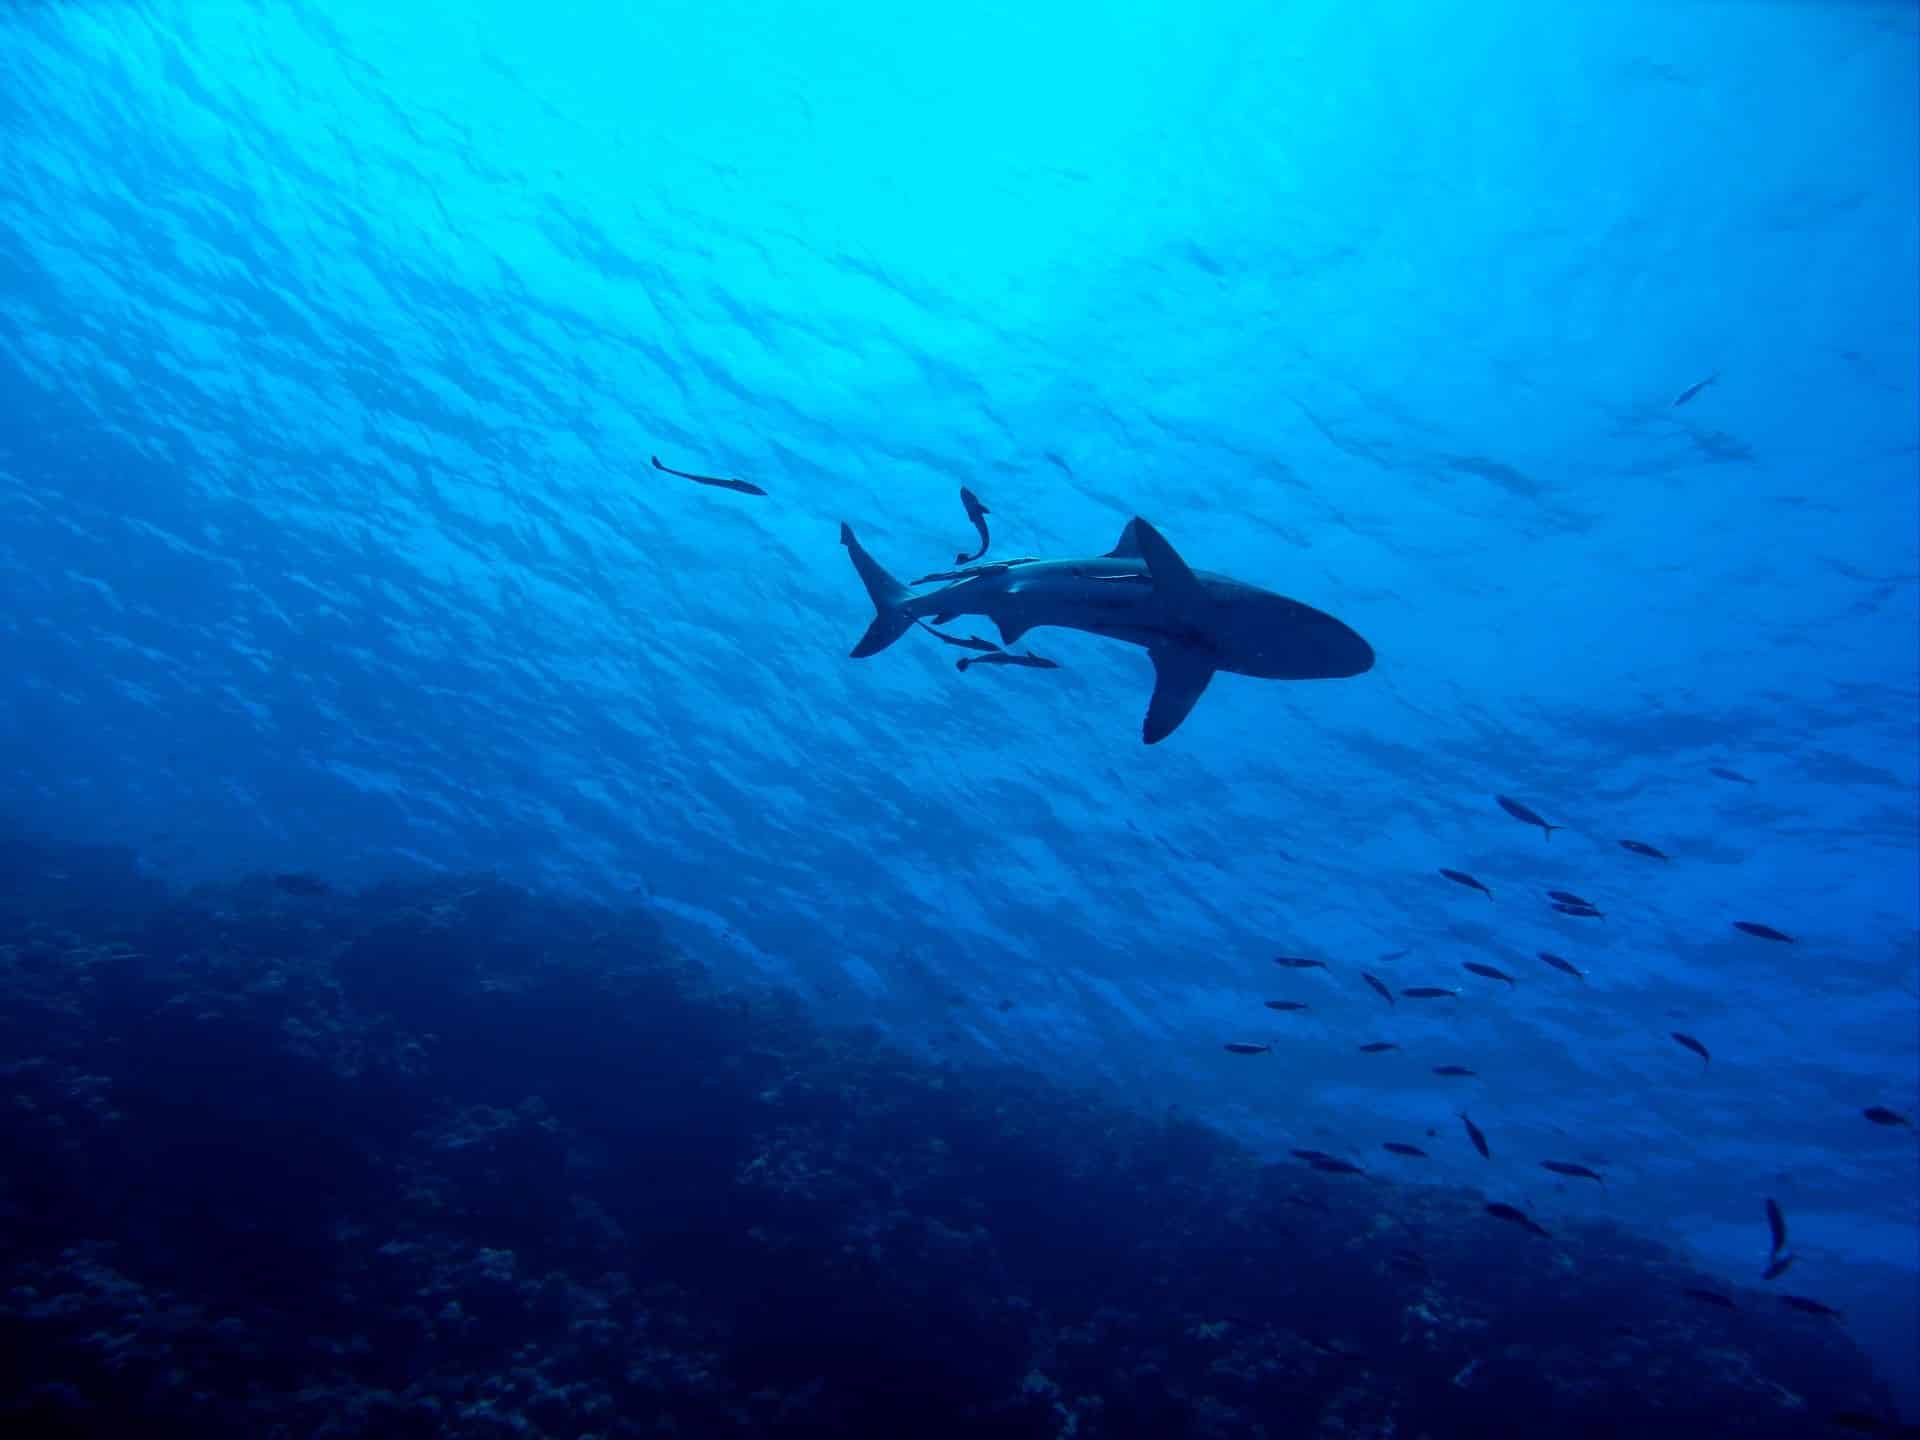 Haie im Mittelmeer: Welche Arten kommen vor? Geht eine Gefahr für Urlauber von den Raubfischen aus? Foto: Pixabay